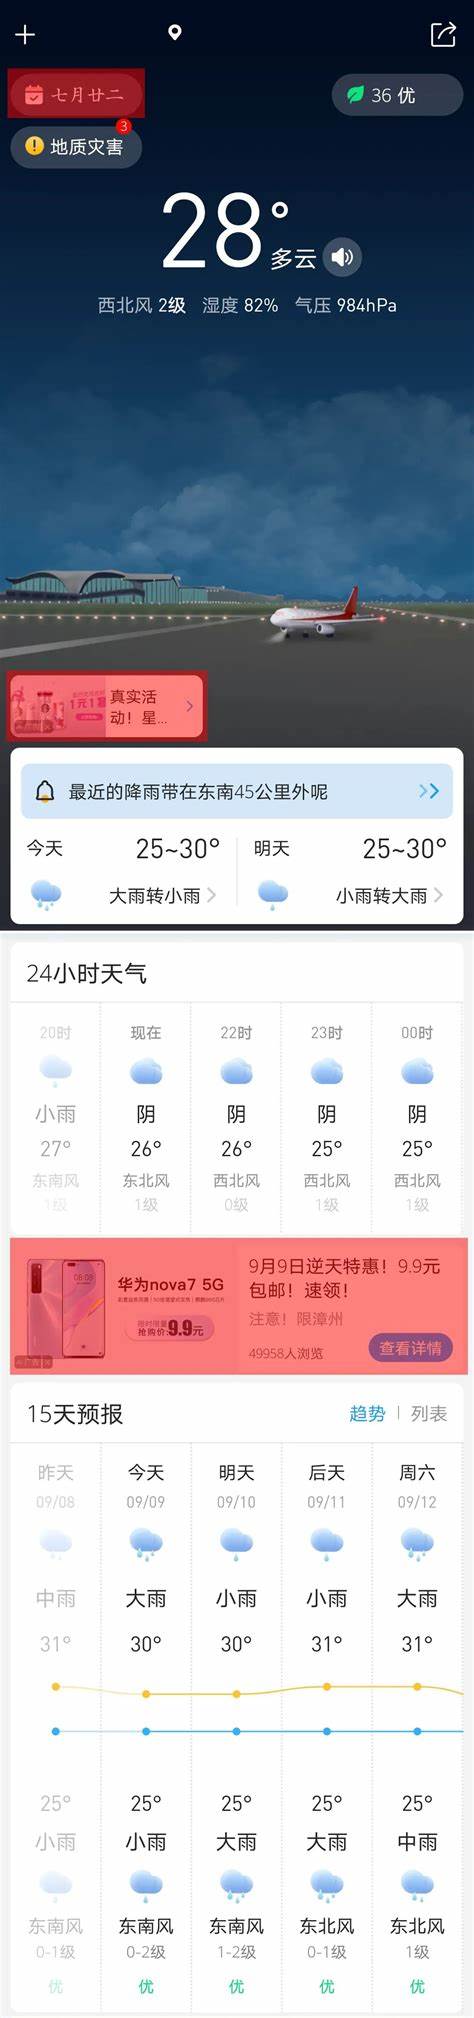 河北邯郸天气预报24小时详情查询